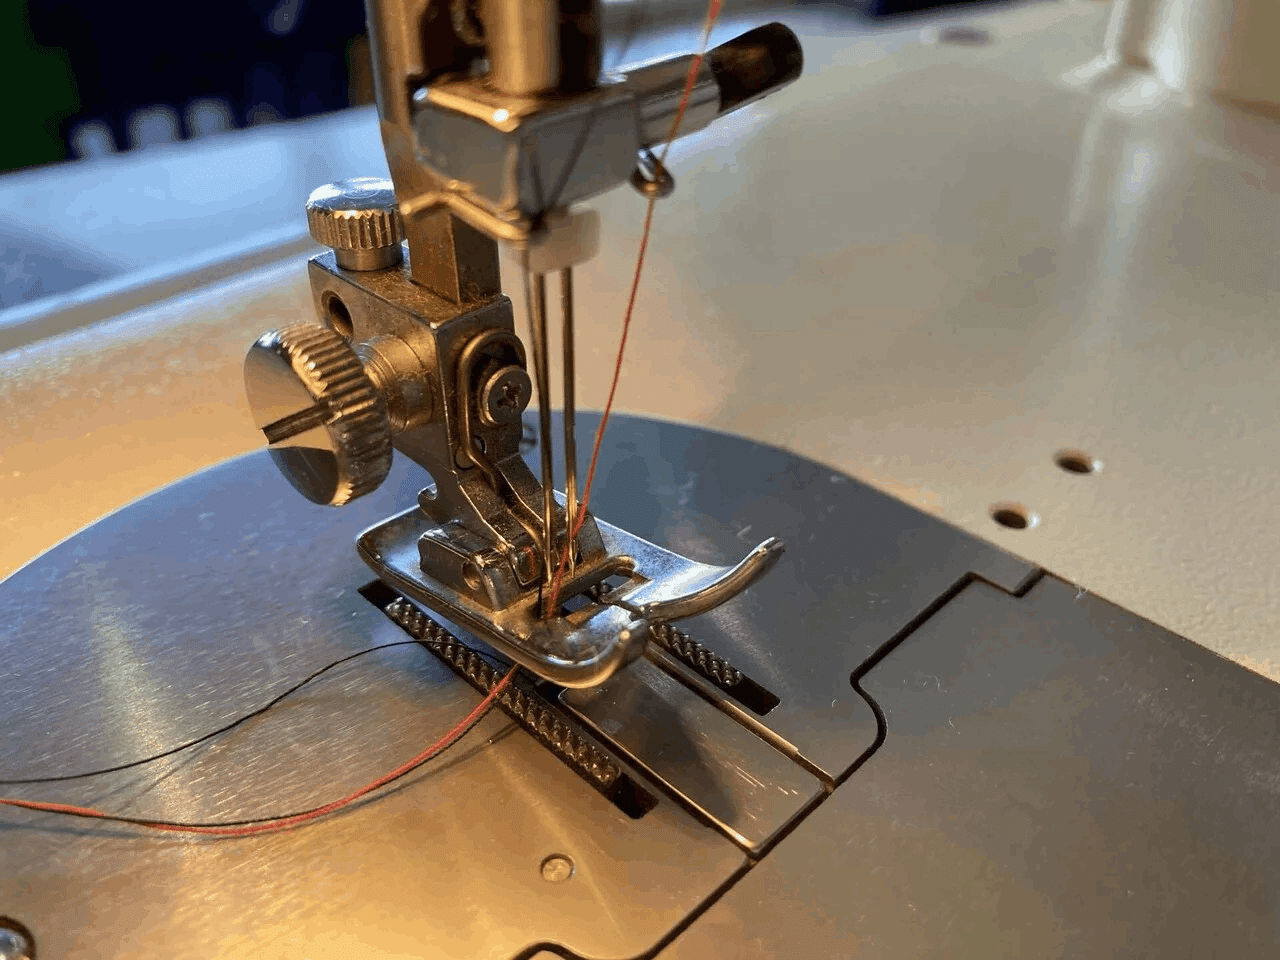 約50年前のミシン【ジャノメ トピアエース802型】試し縫いしてみた 